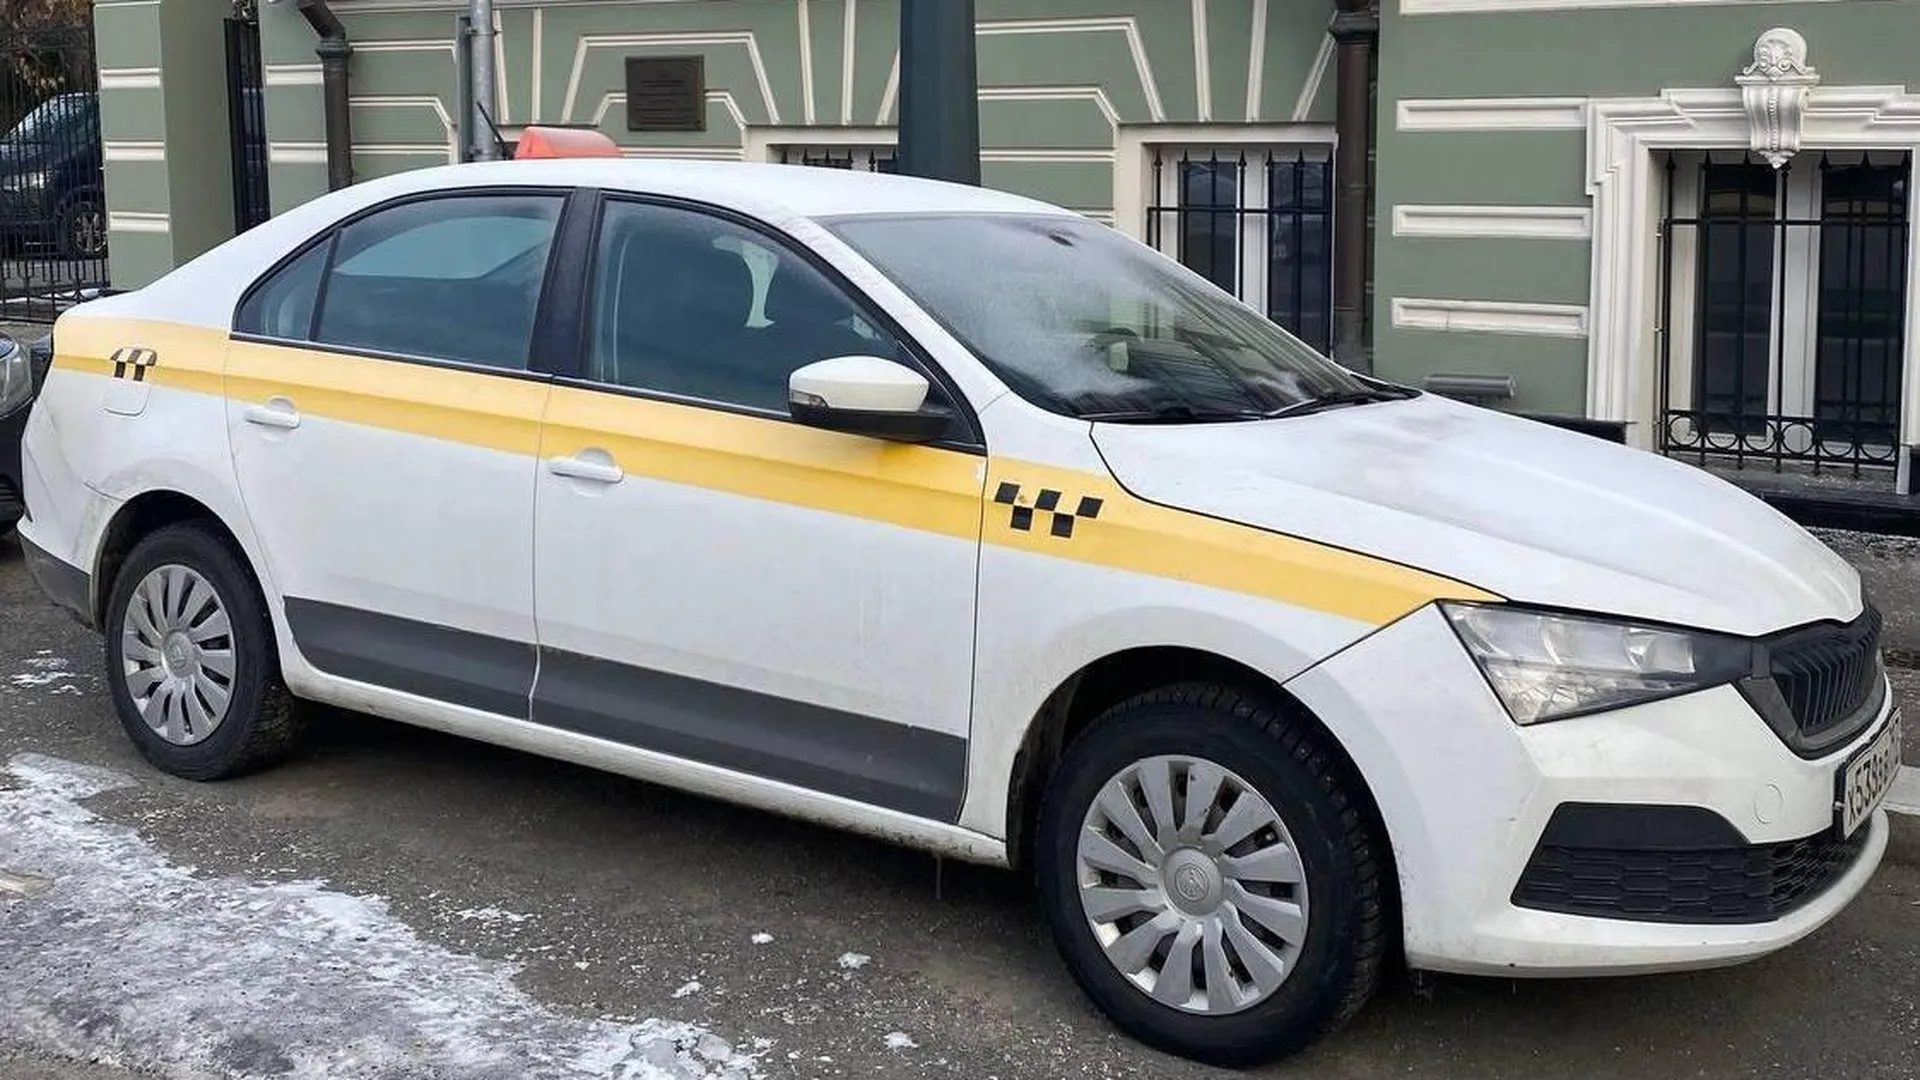 Минтранс Подмосковья разъяснил водителям такси обязанности перед маломобильными пассажирами